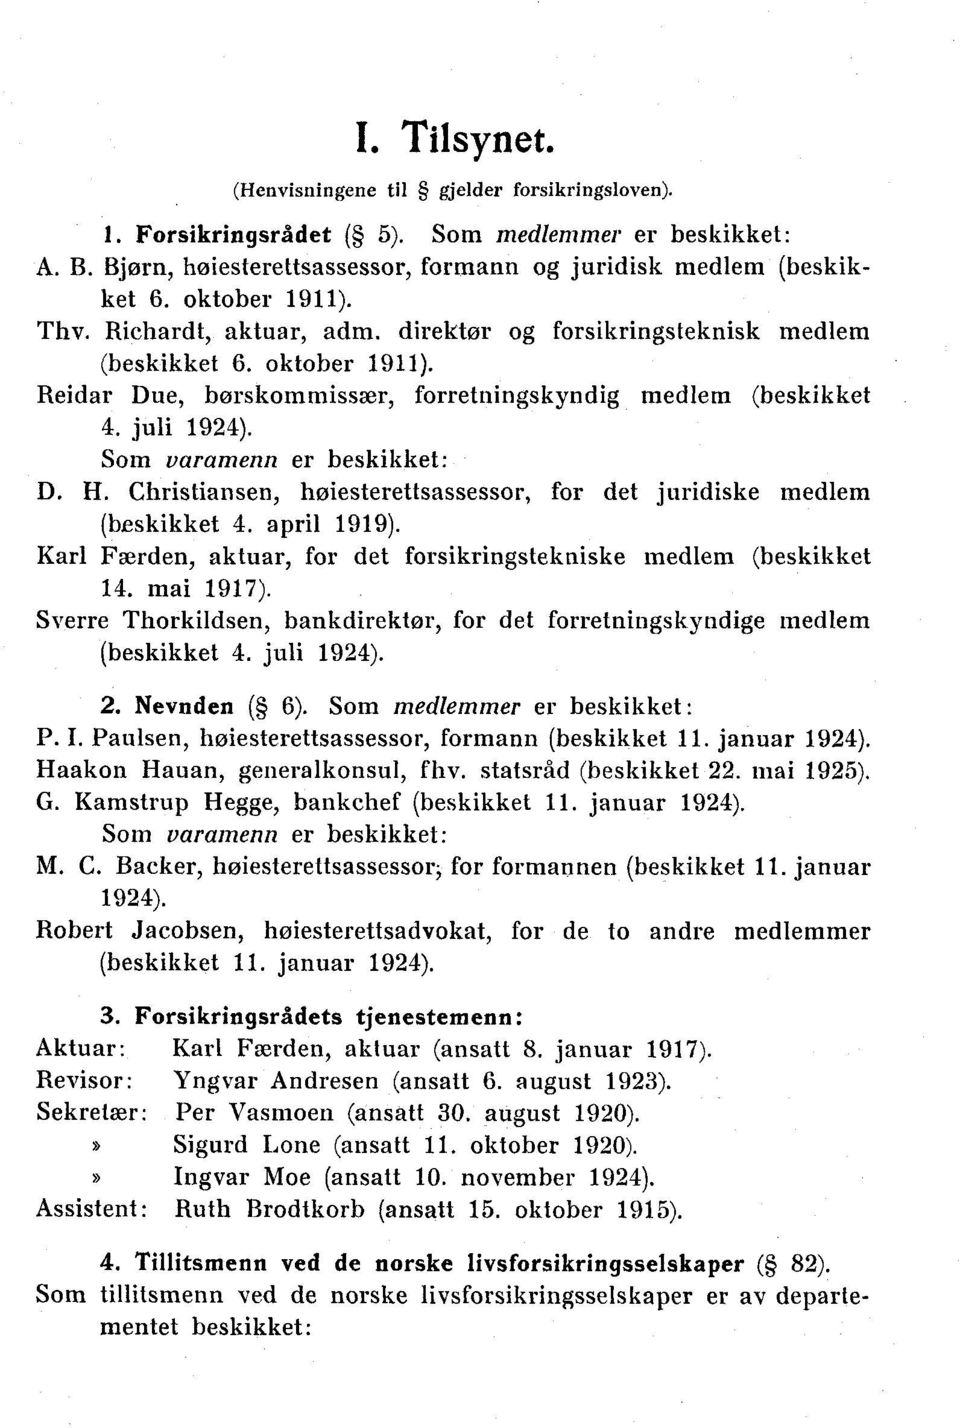 Soin varamenn er beskikket: D. H. Christiansen, høiesterettsassessor, for det juridiske medlem (beskikket 4. april 1919). Karl Færden, aktuar, for det forsikringstekniske medlem (beskikket 14.